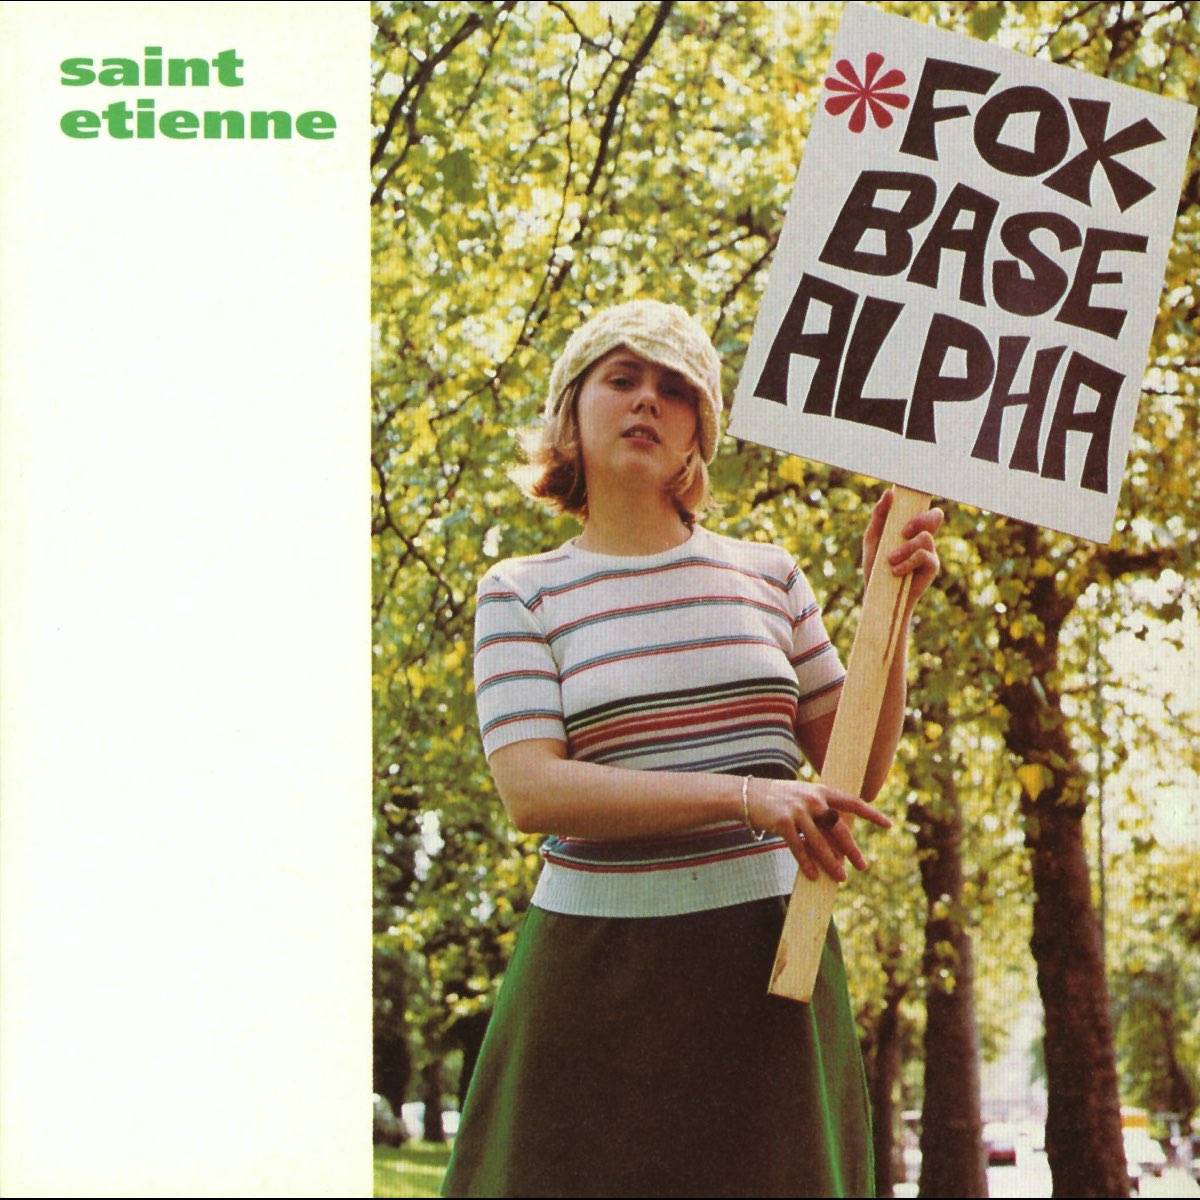 Saint Etienne Foxbase Alpha cover artwork